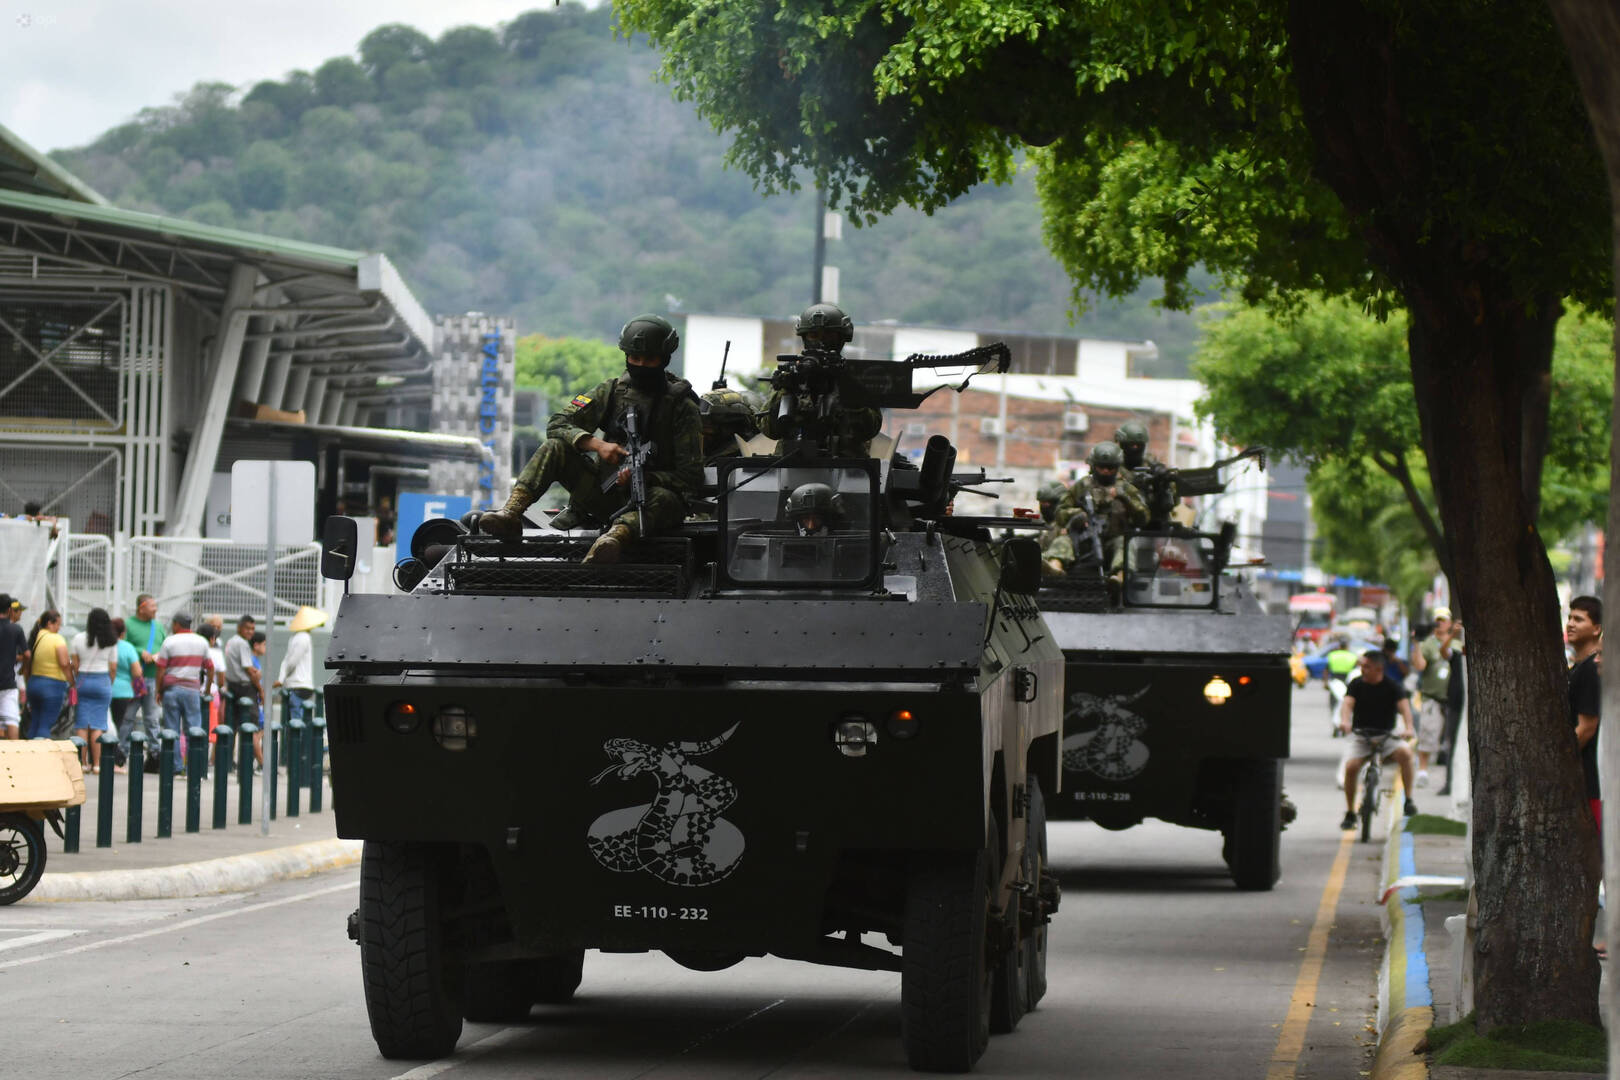 الأكوادور.. تحرير 41 من رجال الأمن من قبضة عصابات اتخذتهم رهائن داخل السجون